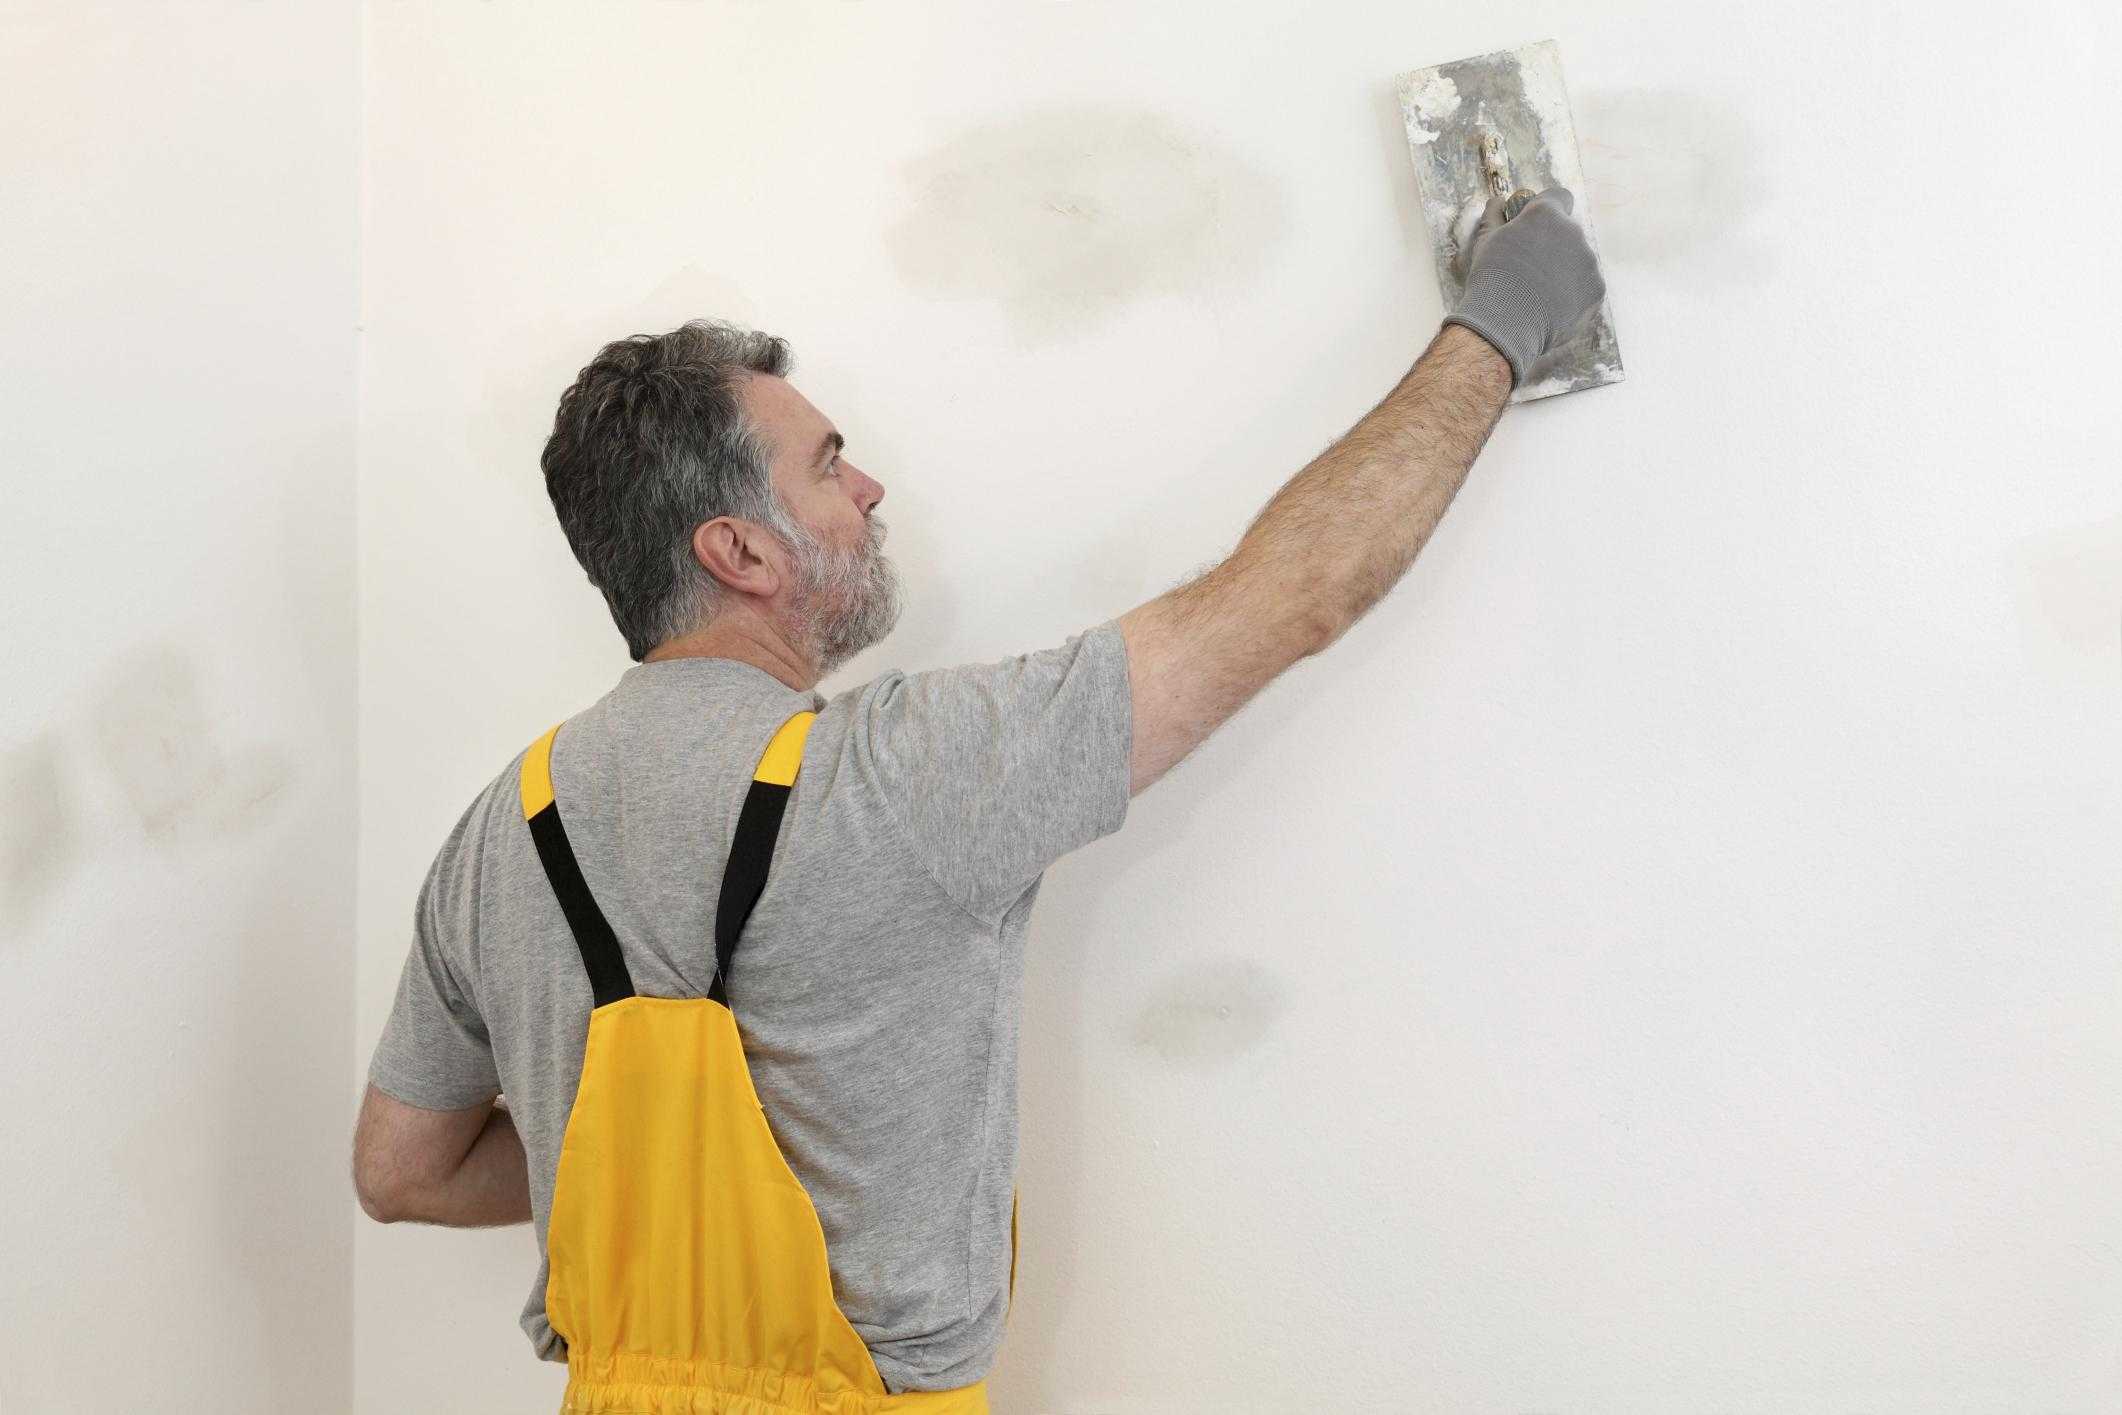 Шпаклевка стен под обои (72 фото): финишная шпаклевка своими руками, как правильно шпаклевать стены из гипсокартона, какую лучше выбрать